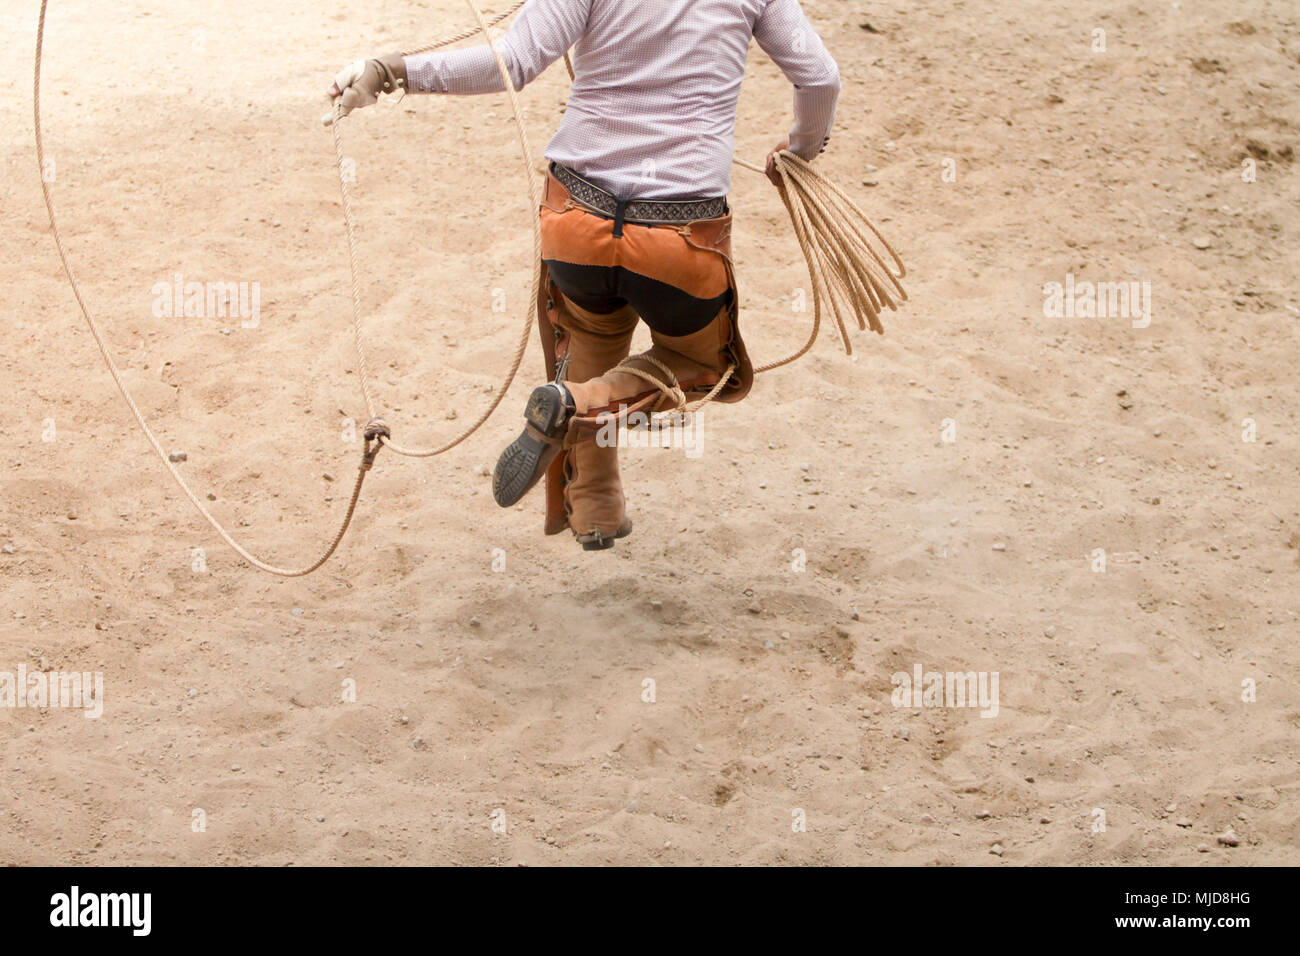 Mexican charro saltando attraverso il suo lazo, la charreria (equitazione), charreada Foto Stock